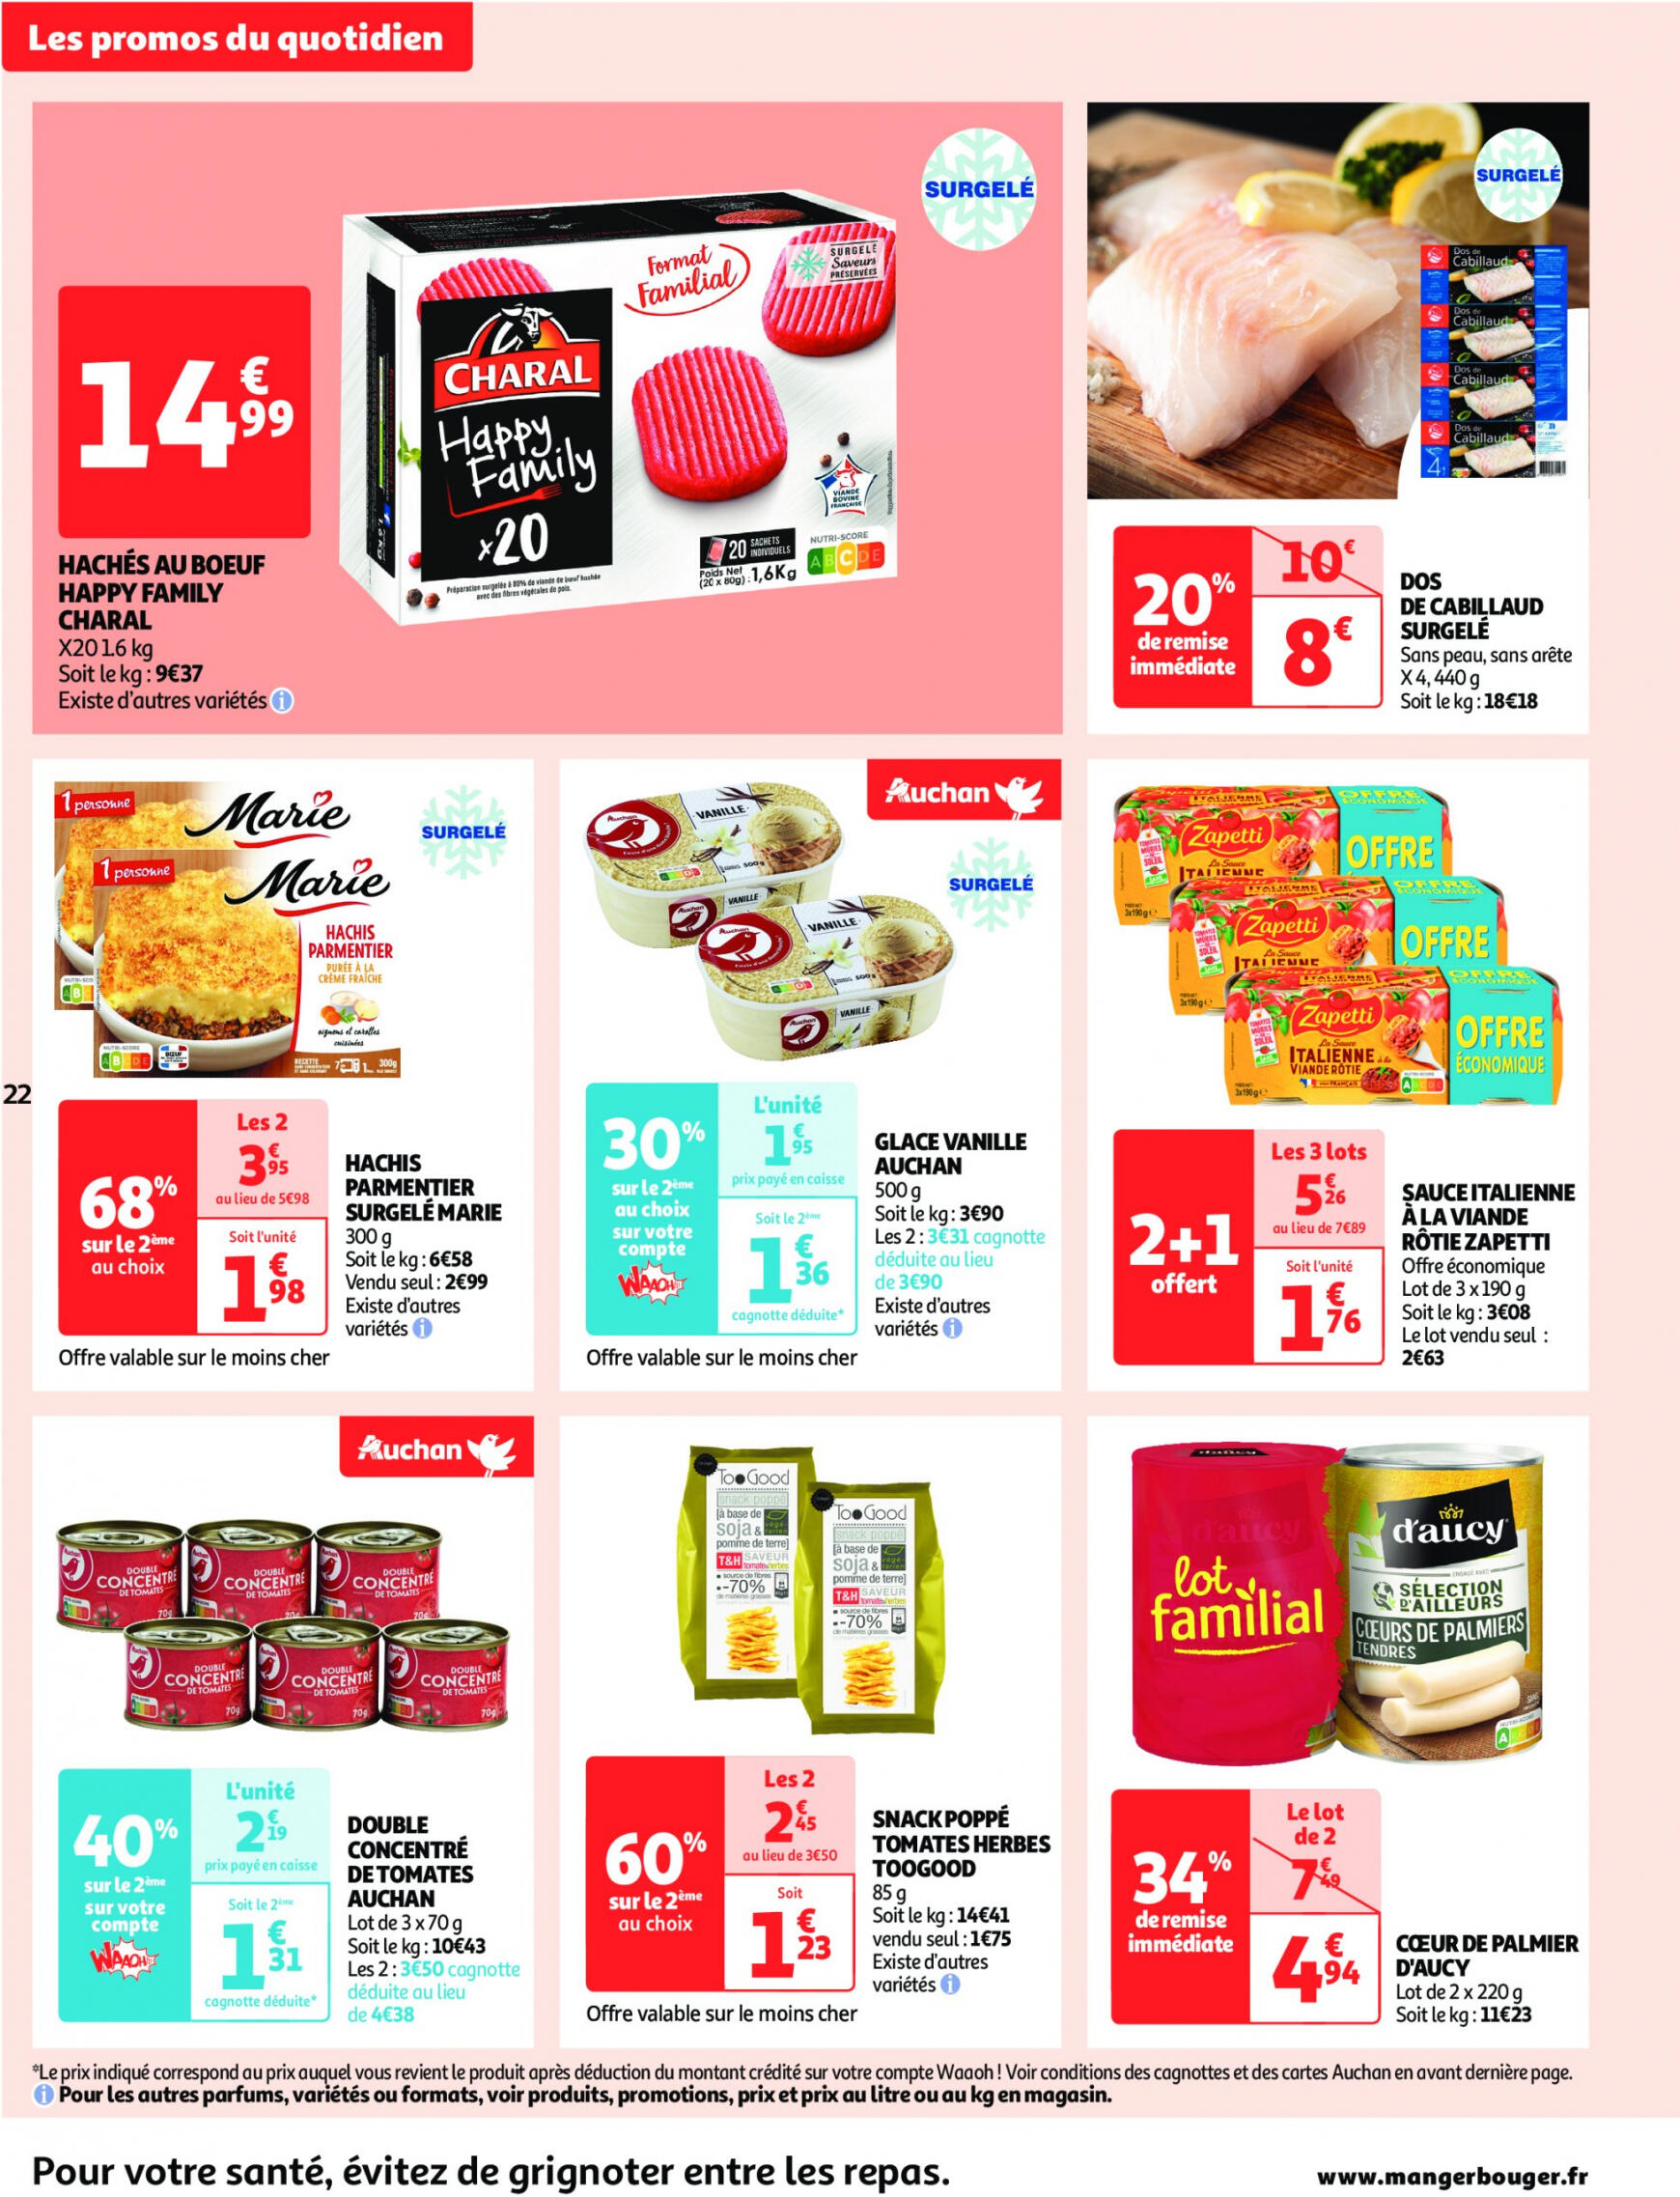 auchan - Auchan supermarché - Faites le plein de bonnes affaires folder huidig 22.05. - 26.05. - page: 22